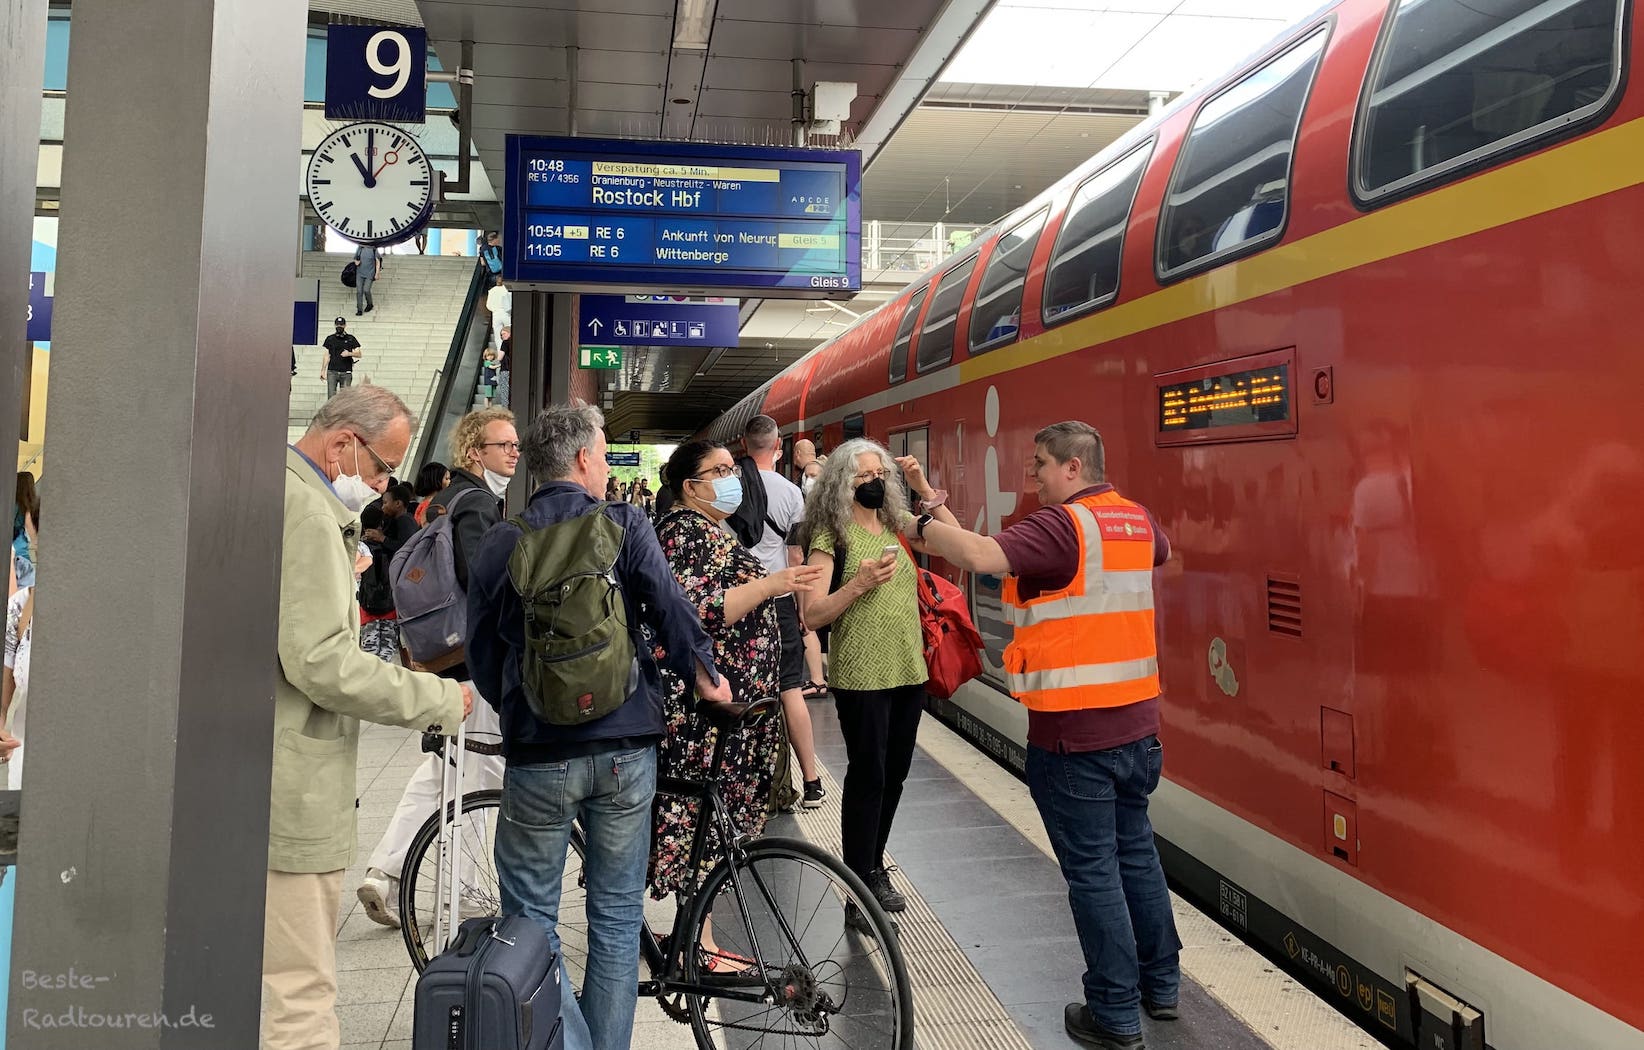 RE 5 Richtung Rostock am Wochenende: Zug überfüllt, steht in Gesundbrunnen, es geht nicht weiter, Ordnungskräfte versuchen, die Überfüllung zu verringern